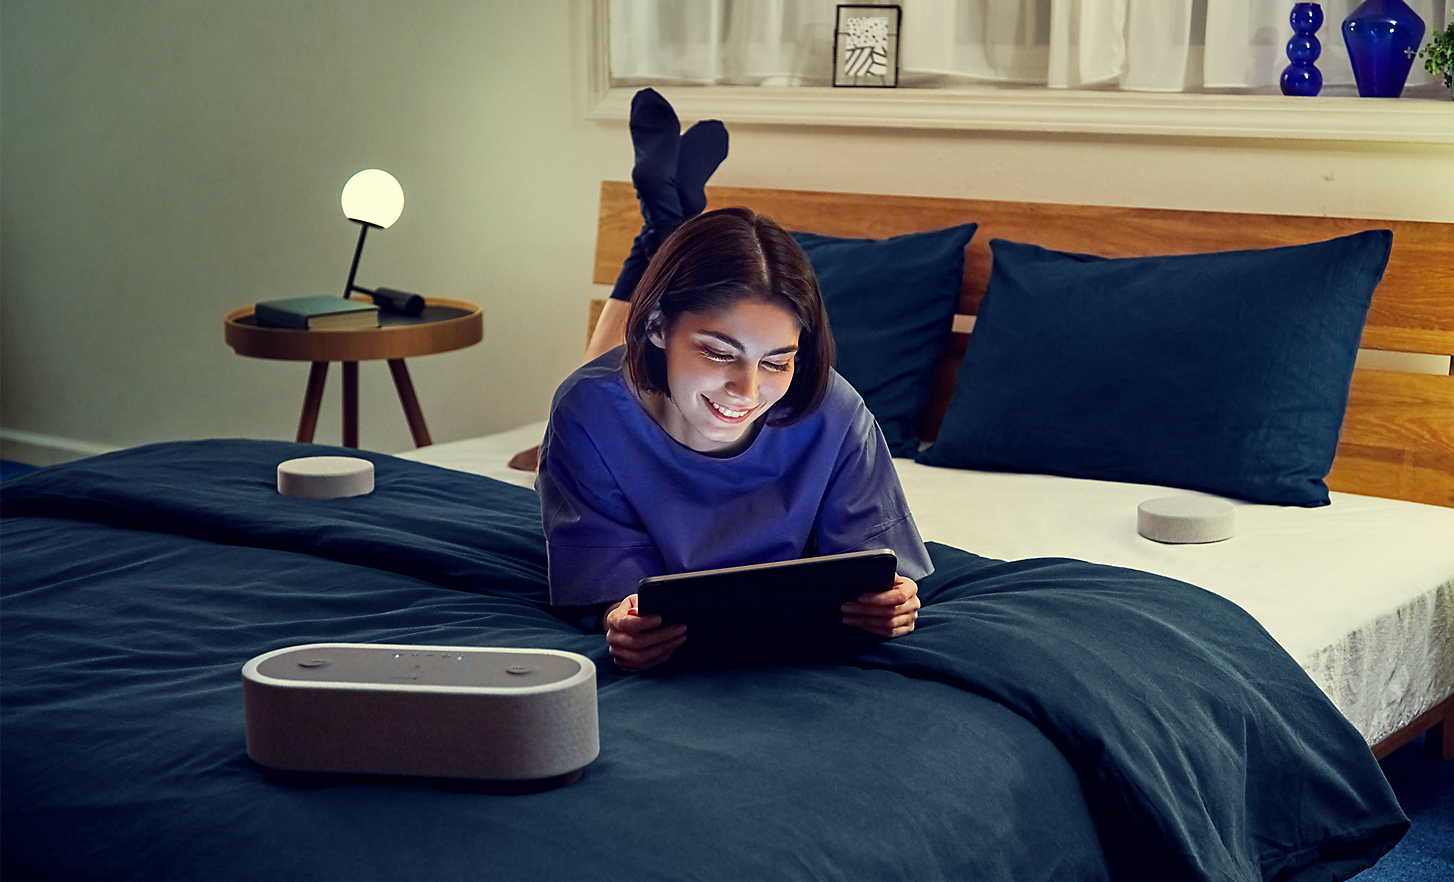 Slika osobe koje leži na krevetu i gleda tablet, okružena je trima zvučnicima sustava HT-AX7